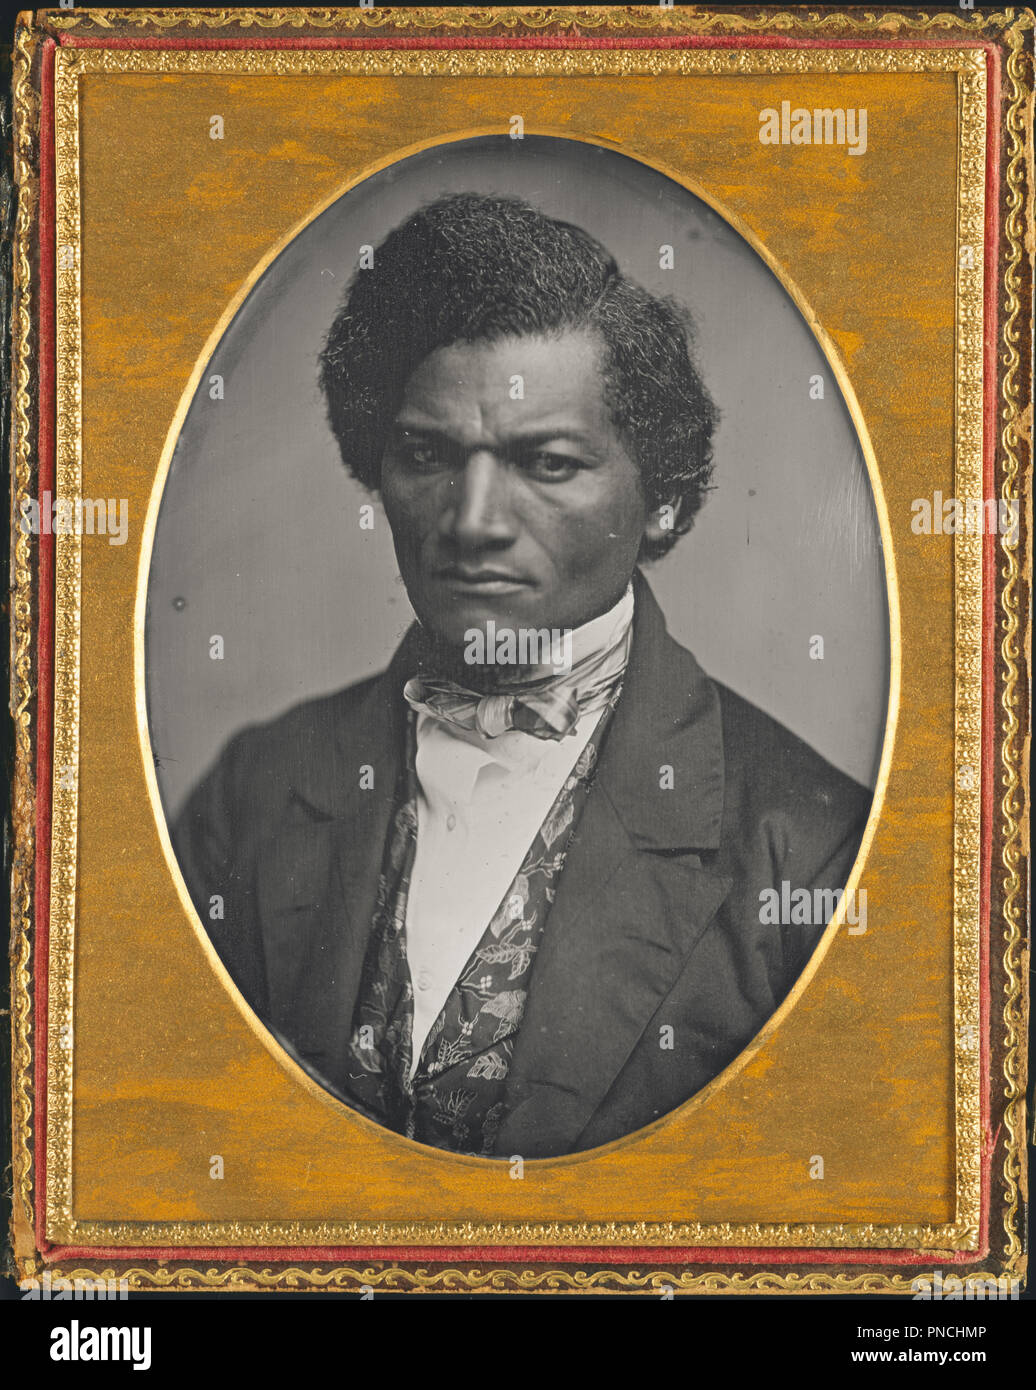 Frederick Douglass. Data/Periodo: 1847/52. Fotografia. Daguerreotype Daguerreotype. Altezza: 140 mm (5.51 in); larghezza: 106 mm (4.17 in). Autore: Samuel J. Miller. Foto Stock